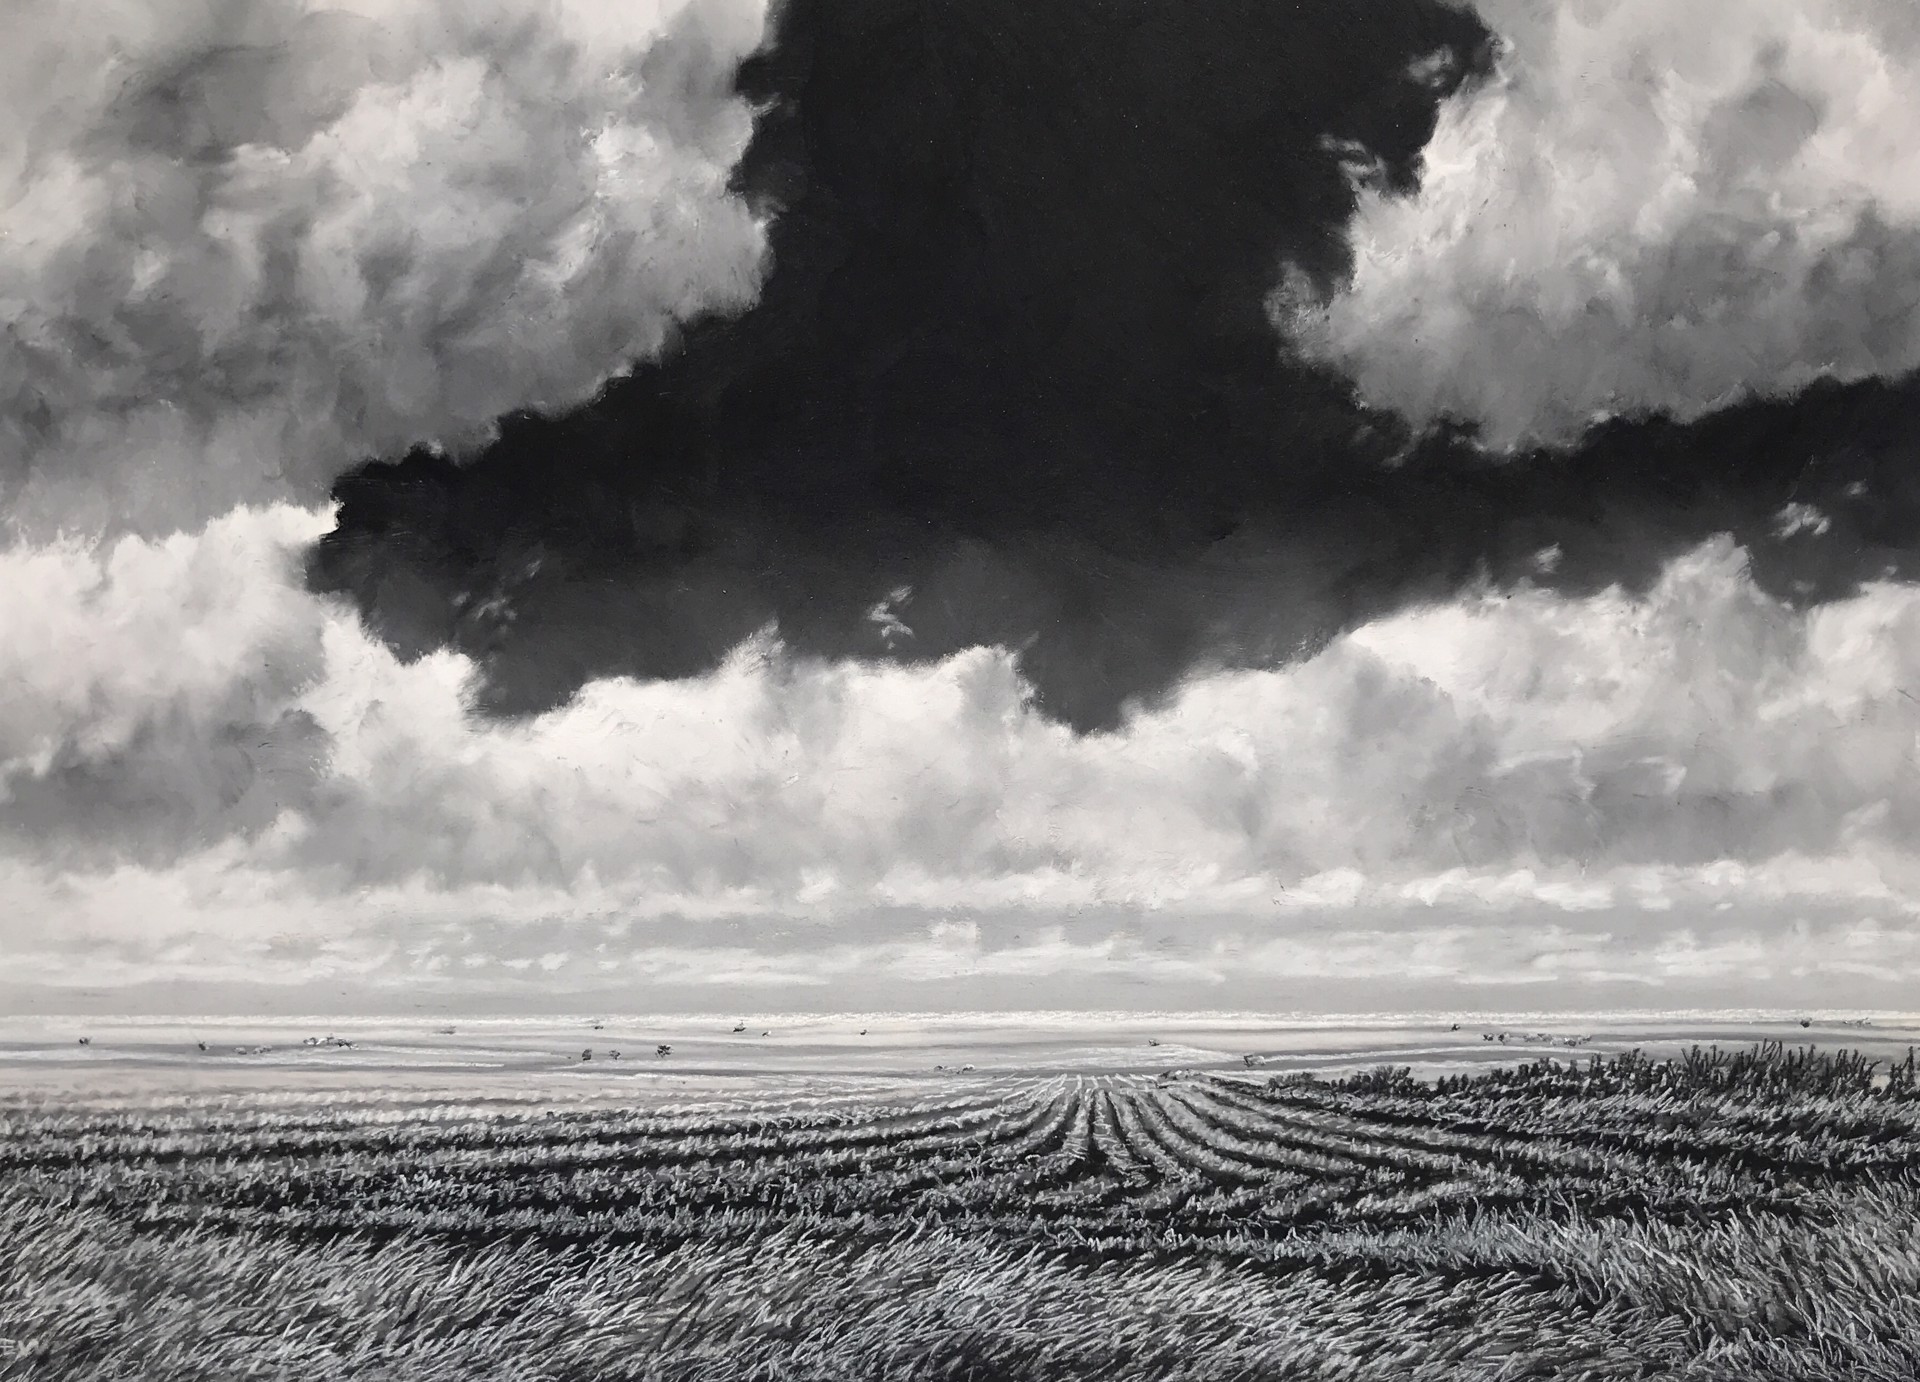 Drifting Clouds in a Midsummer Daydream by Ellen Wagener